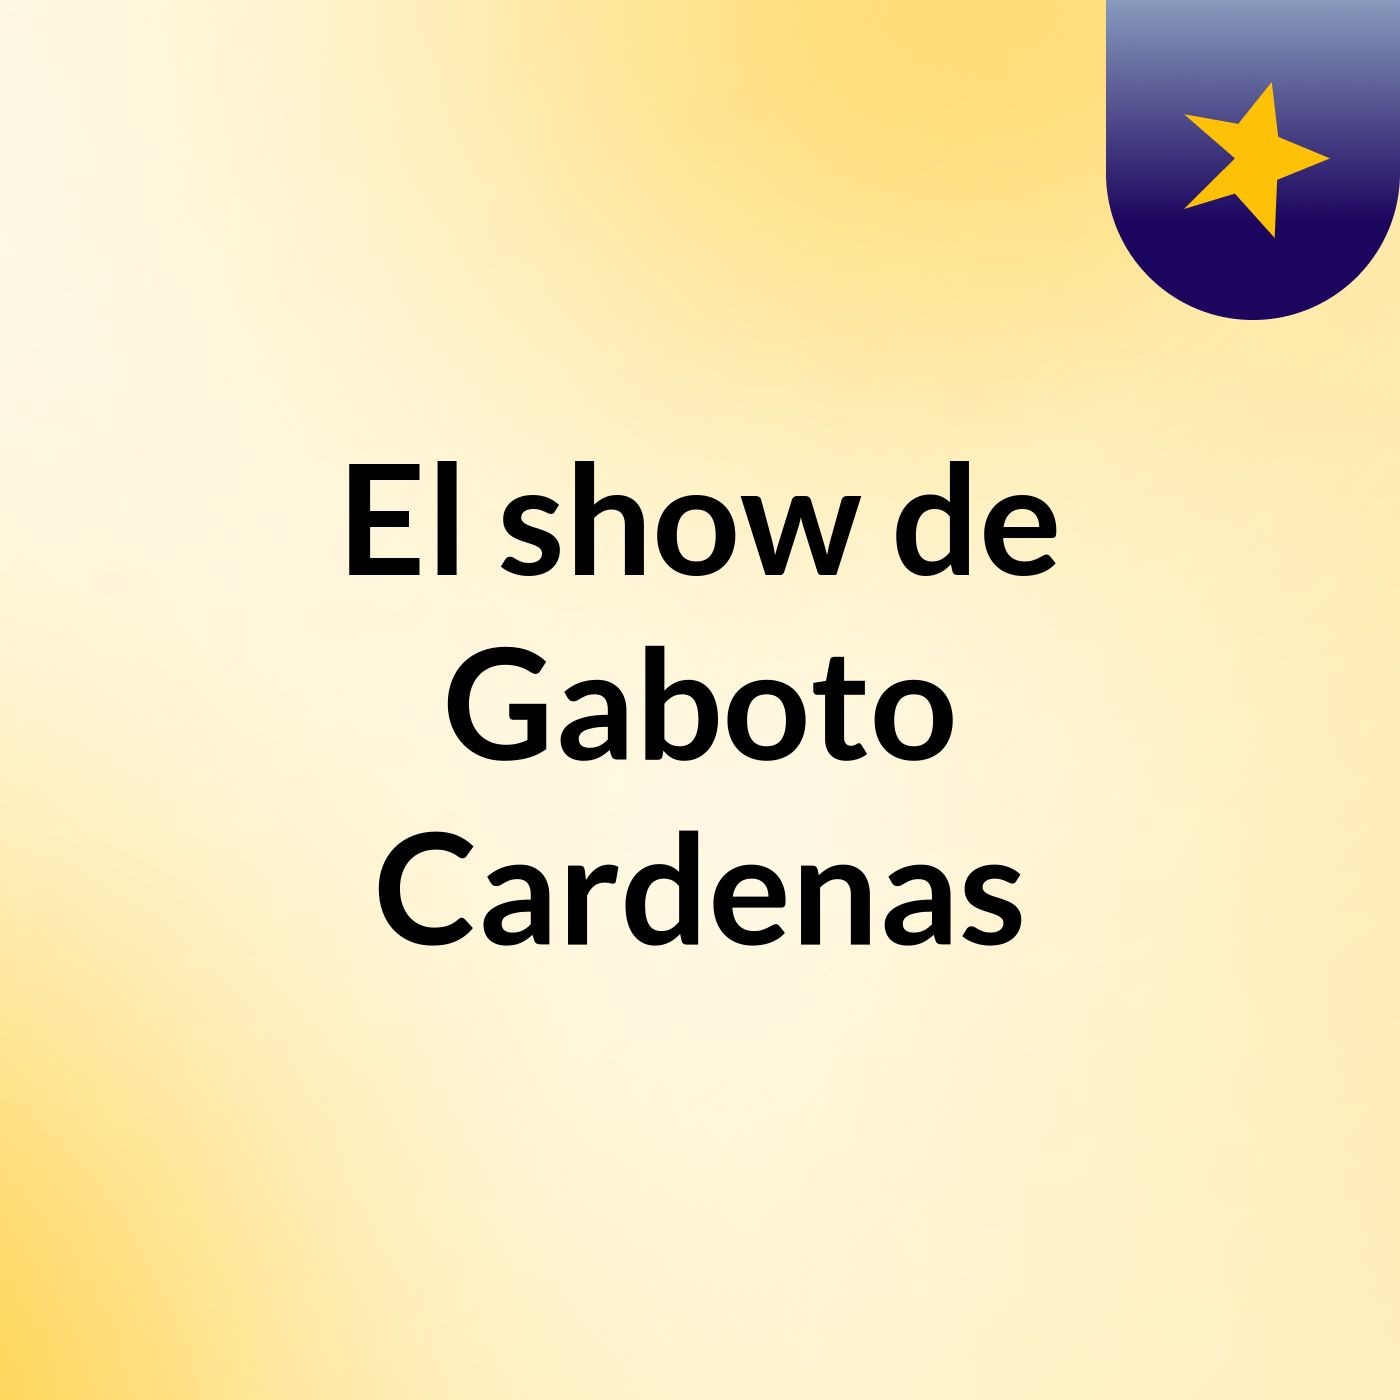 El show de Gaboto Cardenas